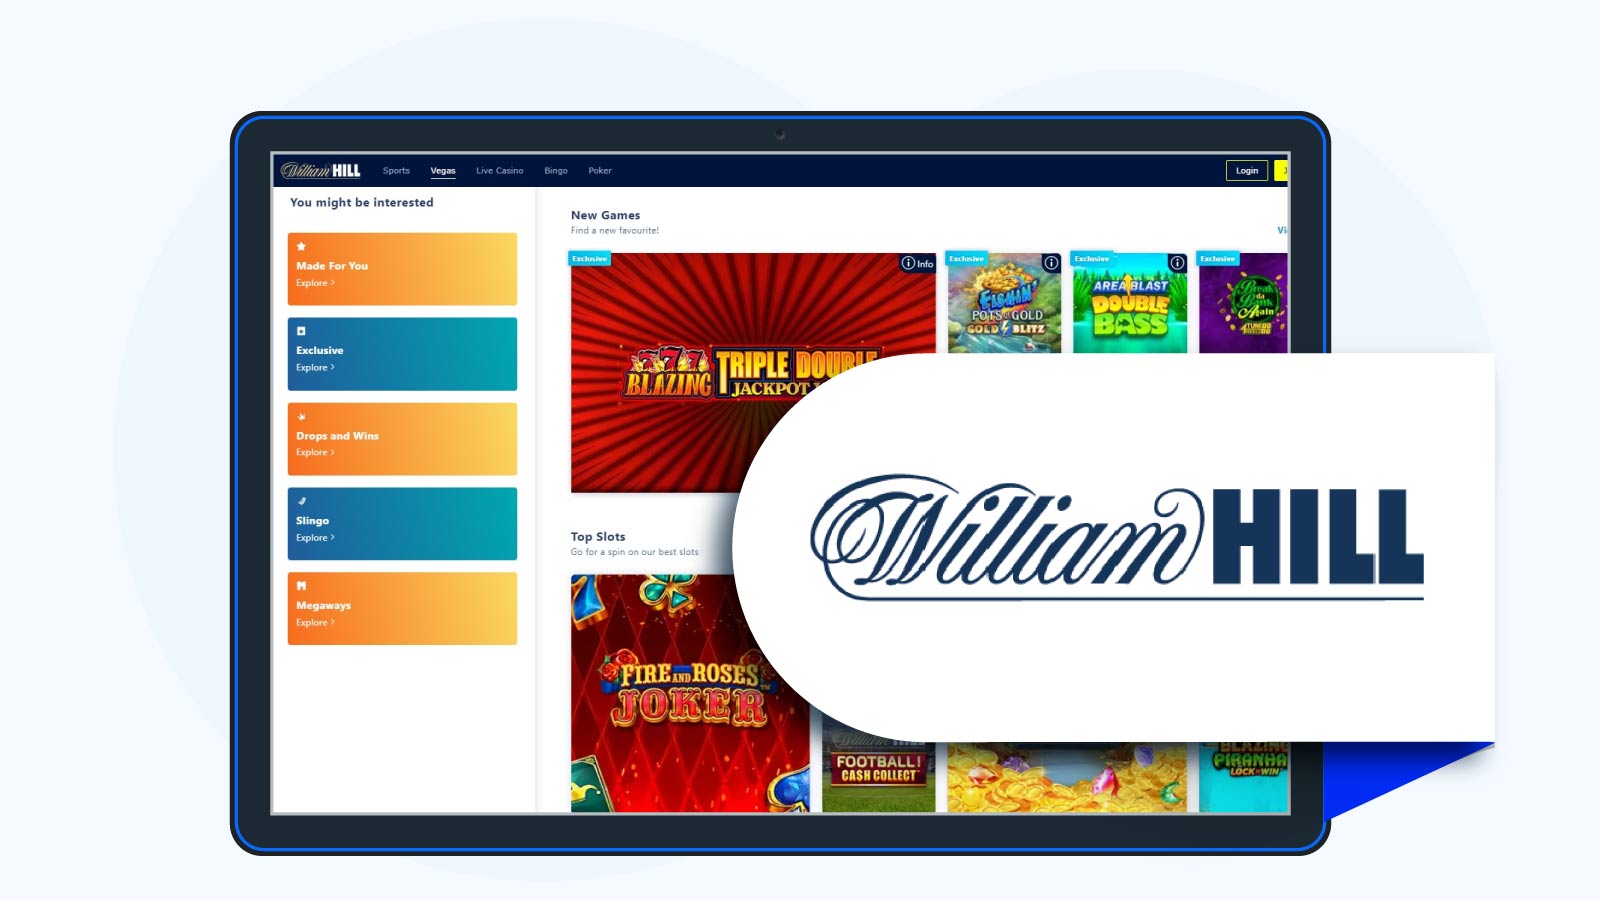 William Hill Casino Deposit €10 get 200 free spins